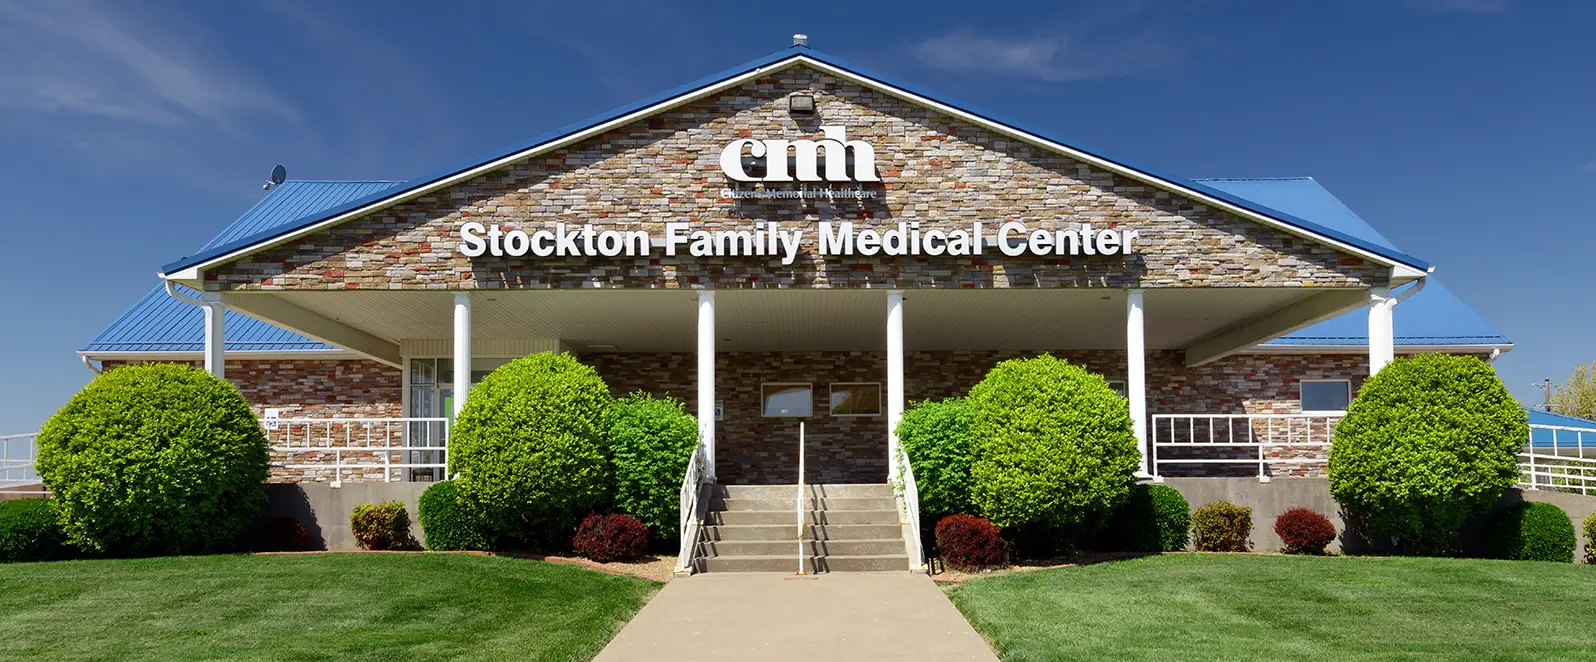 Stockton Family Medical Center exterior